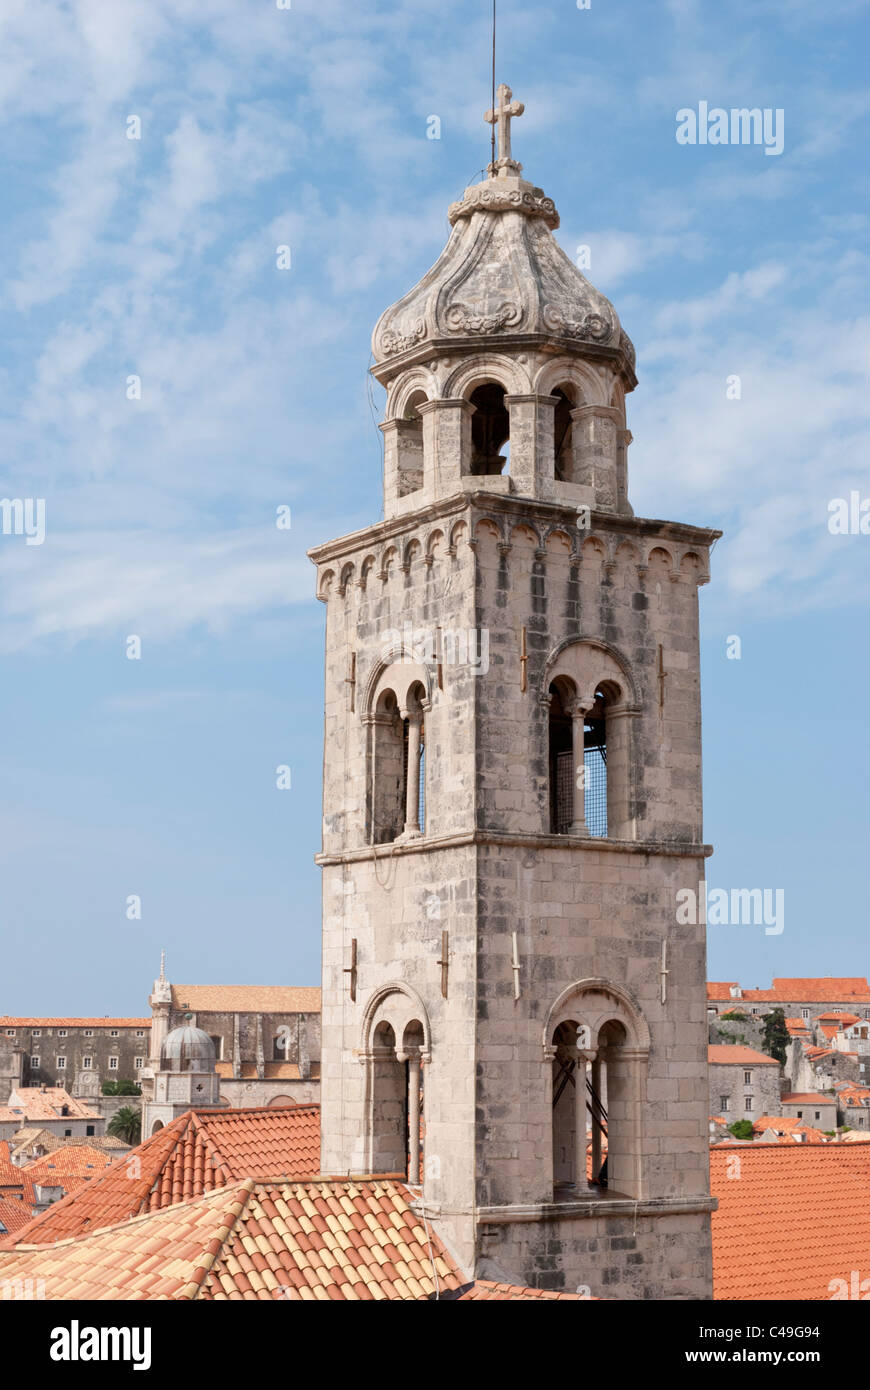 Le clocher de la vieille ville Monasteryin Dominicaine, Dubrovnik, Croatie, vue de l'enceinte de la ville Banque D'Images